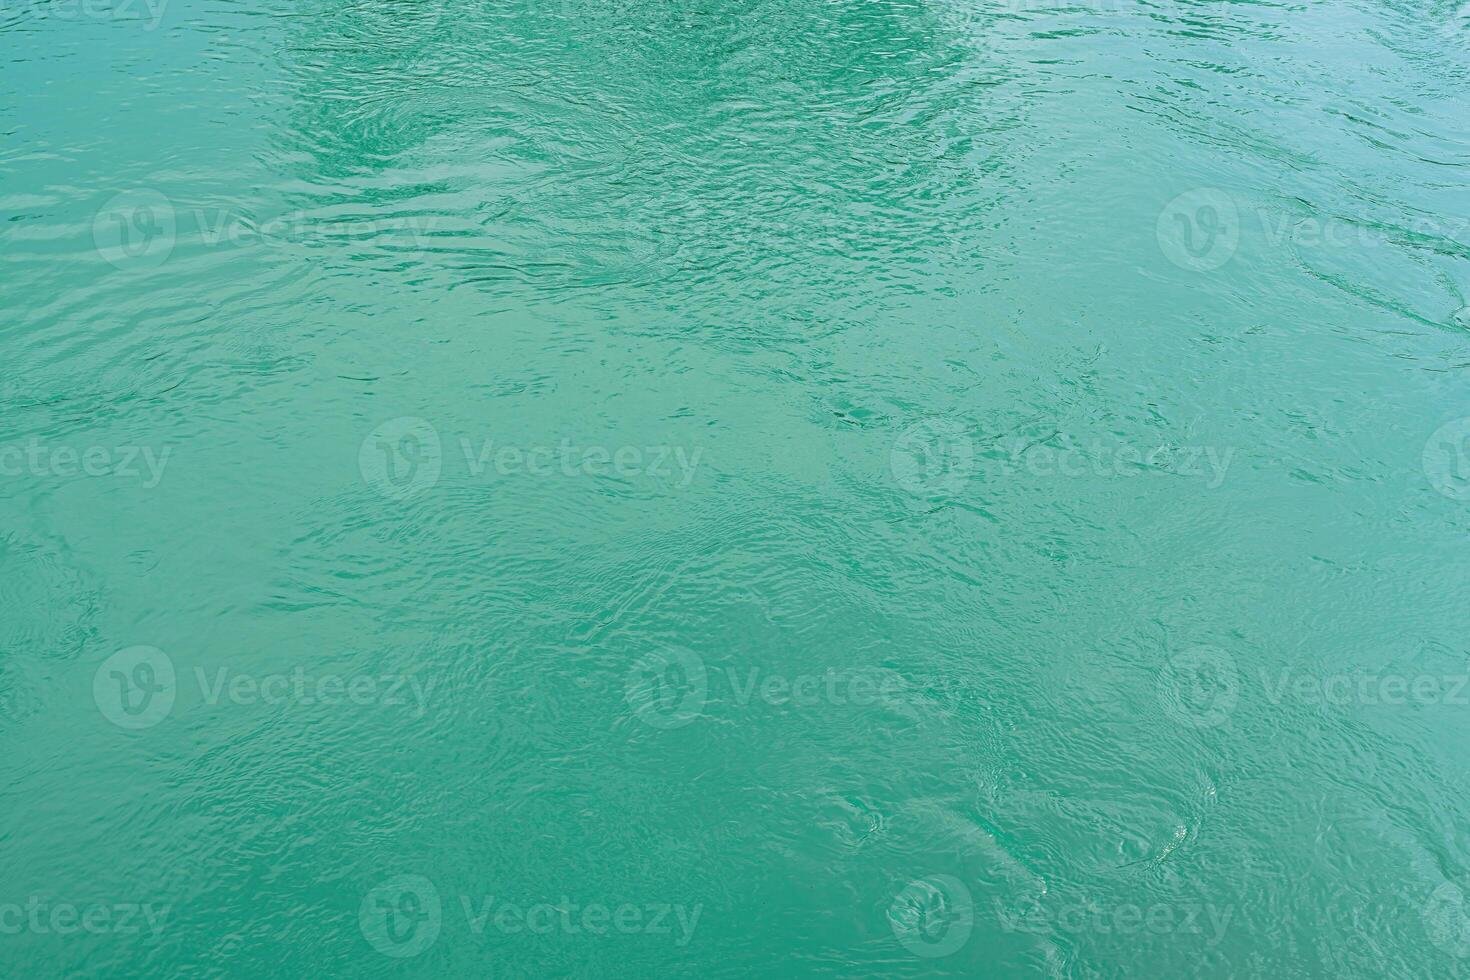 de structuur van de golven van turkoois kleur van snelstromend water in de rivier. foto